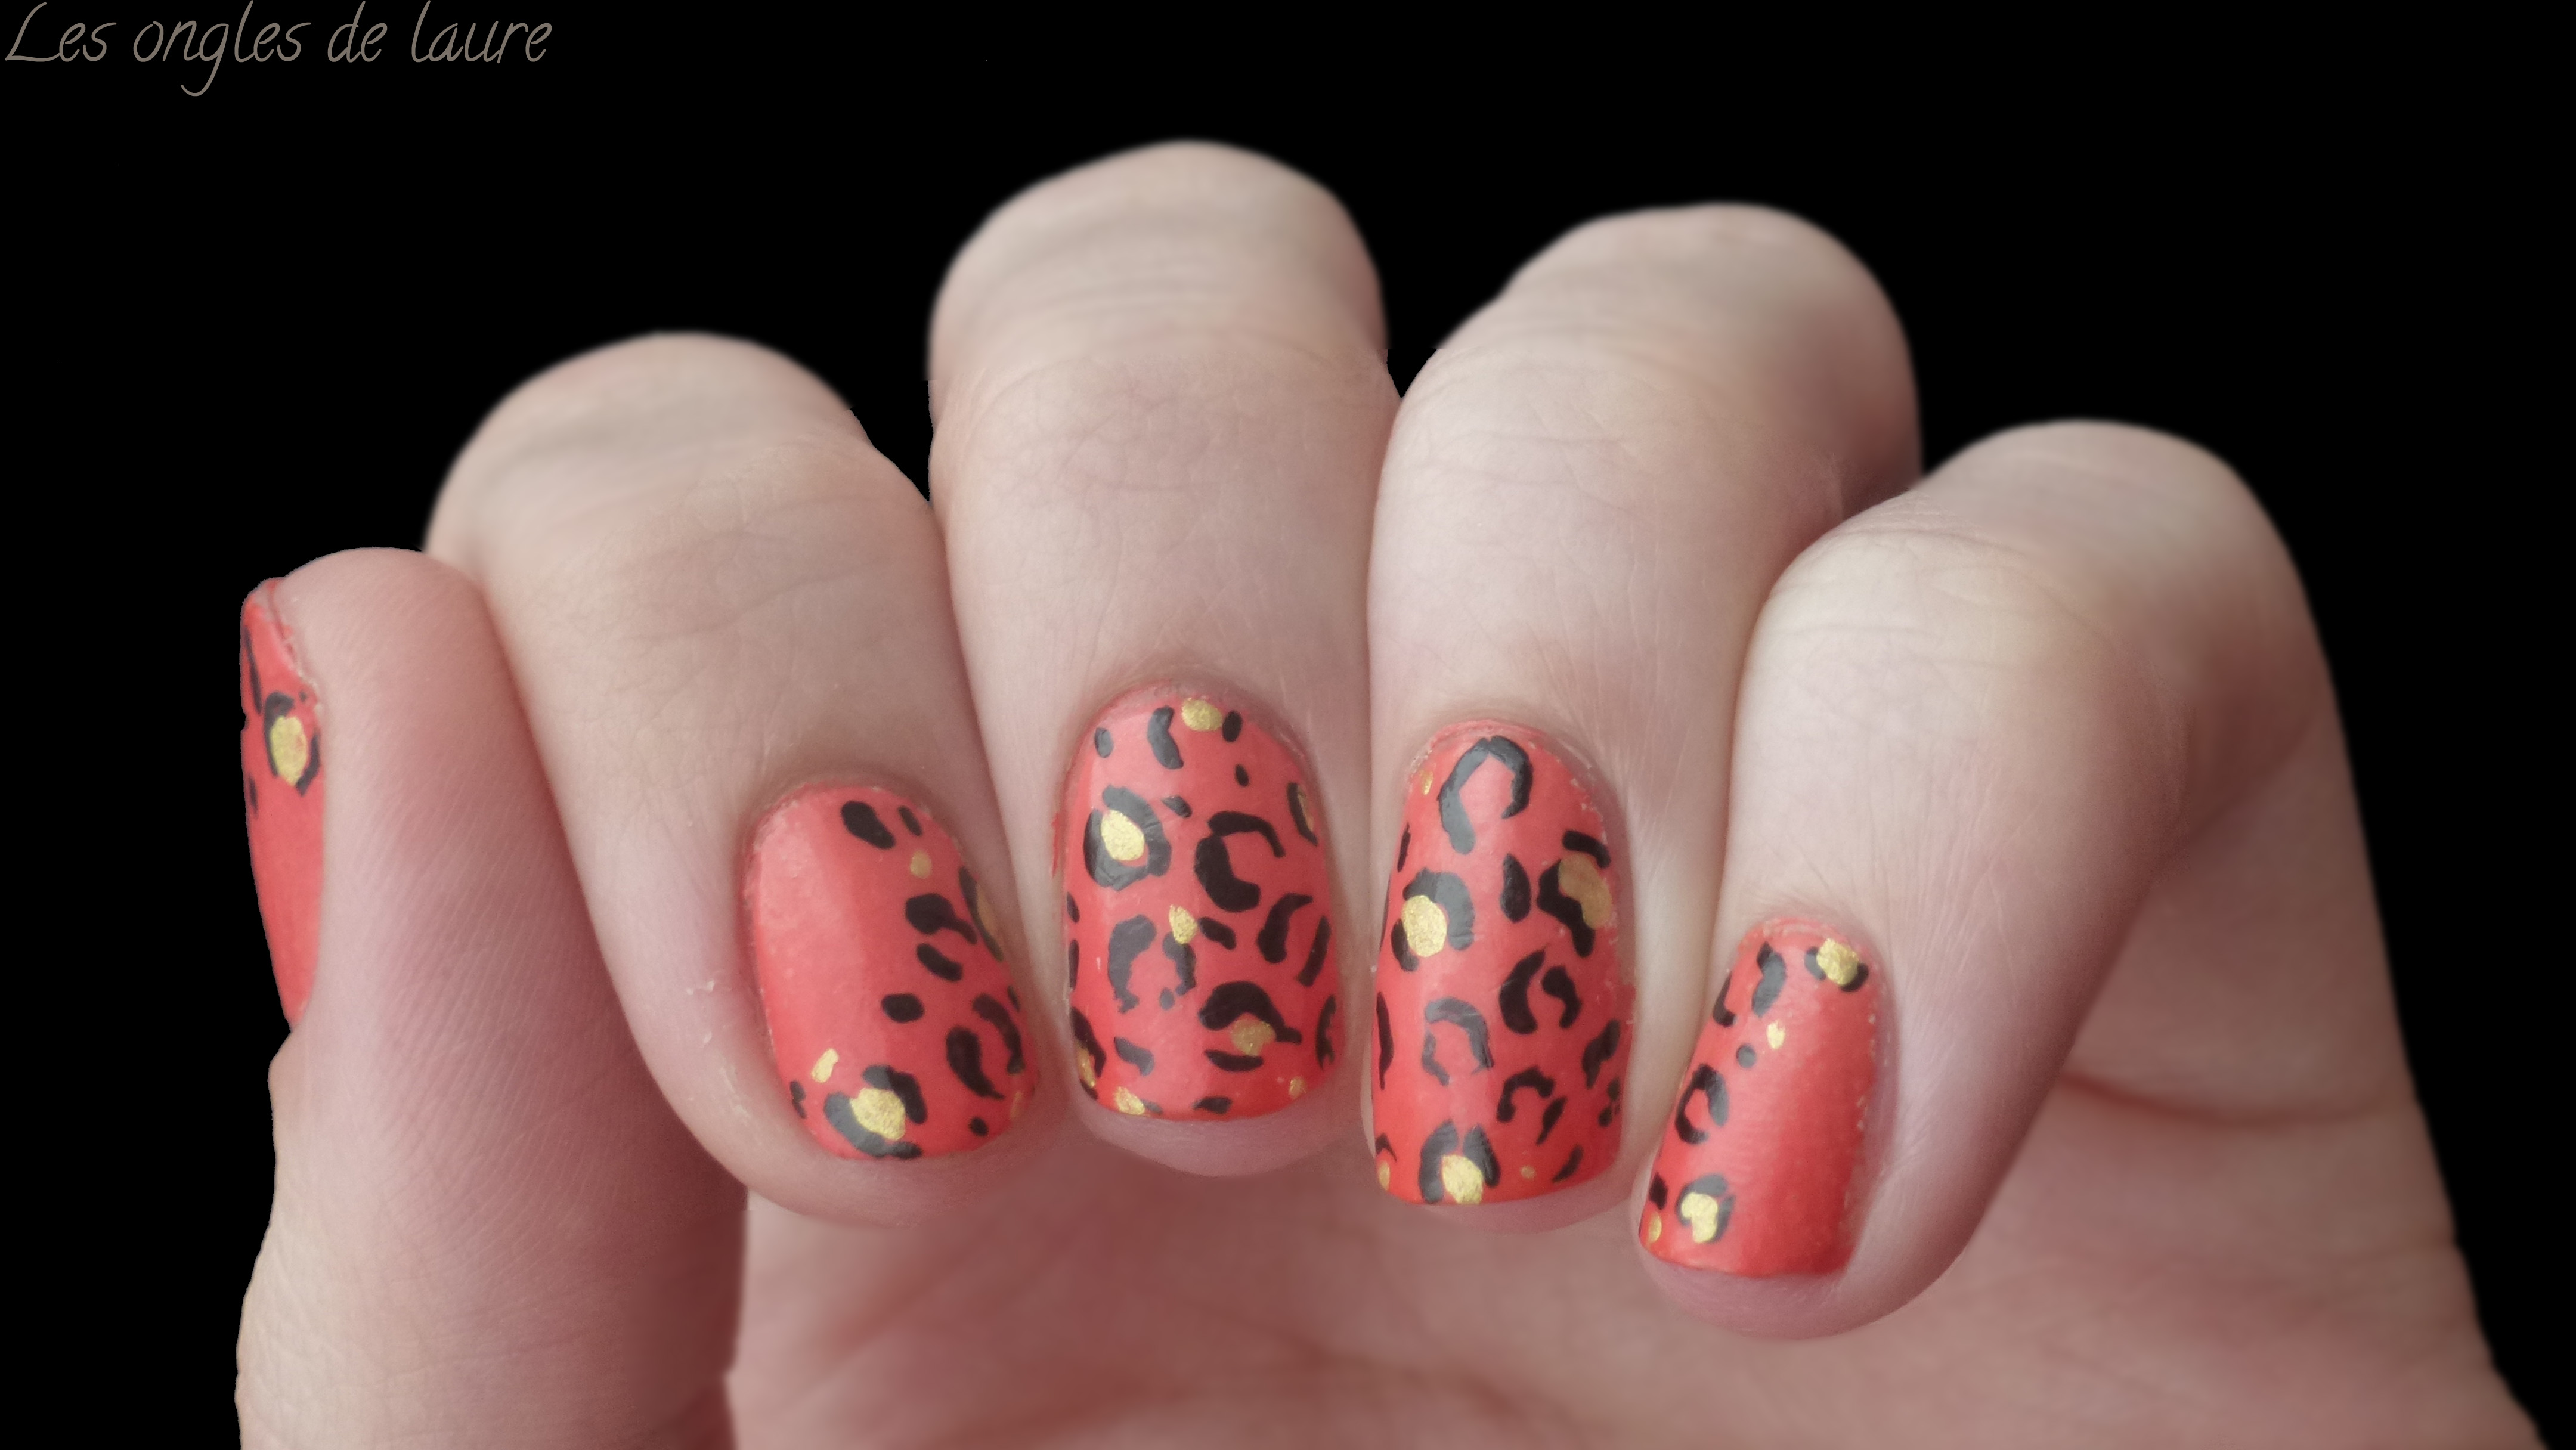 Manucure facile pour ongles courts - Les ongles de Laure - Blog Nail Art